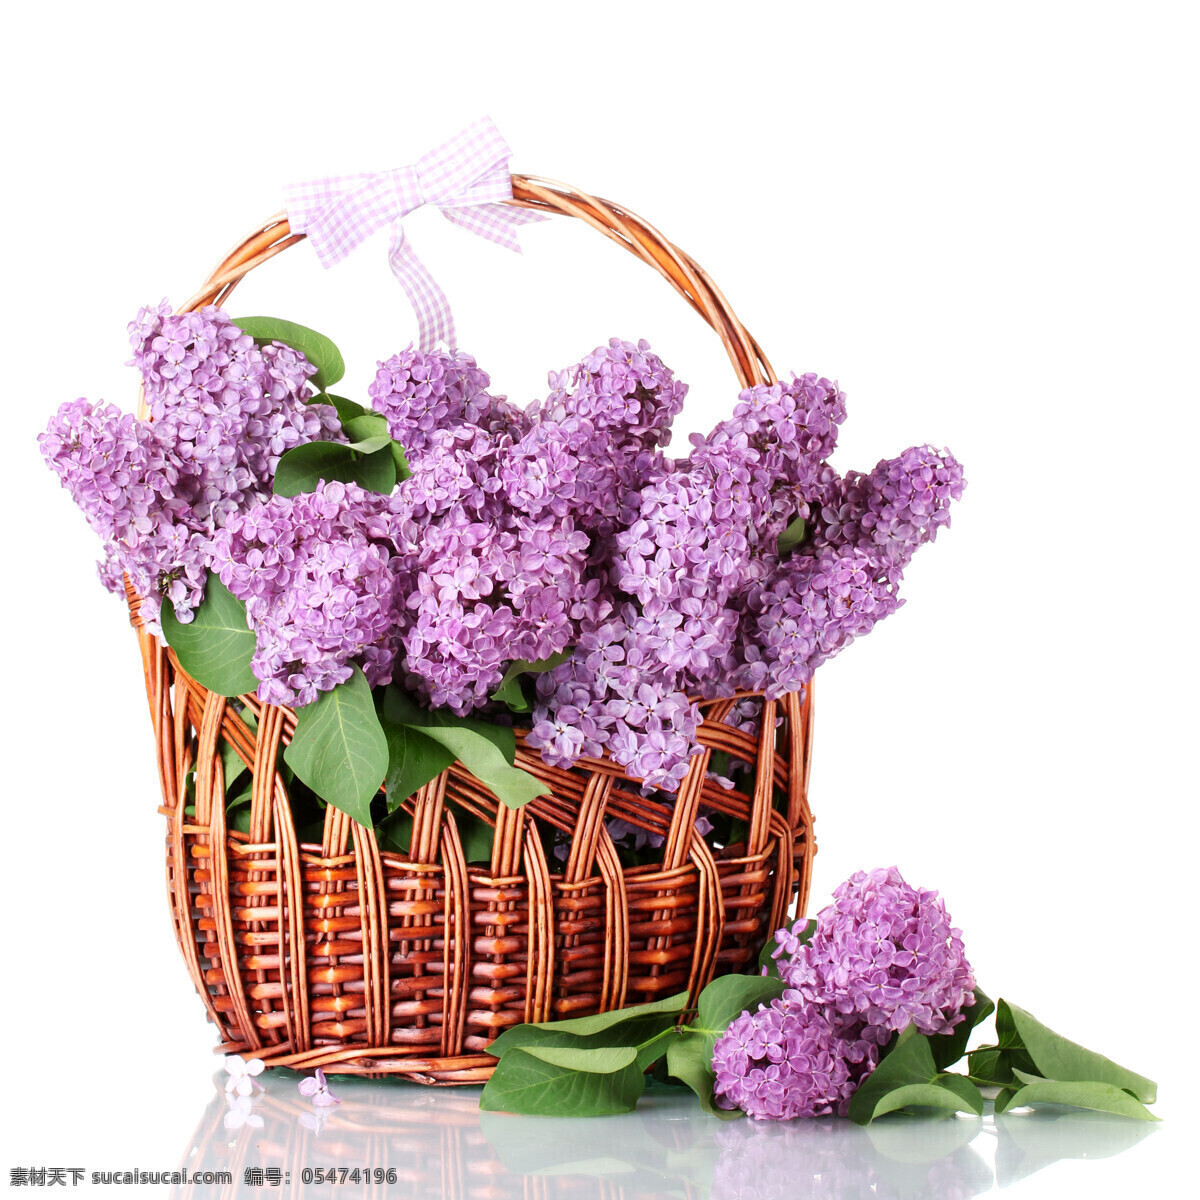 美丽 绣 球花 绣球花 淡紫色花朵 花篮 美丽鲜花 鲜花摄影 美丽花卉 花草树木 生物世界